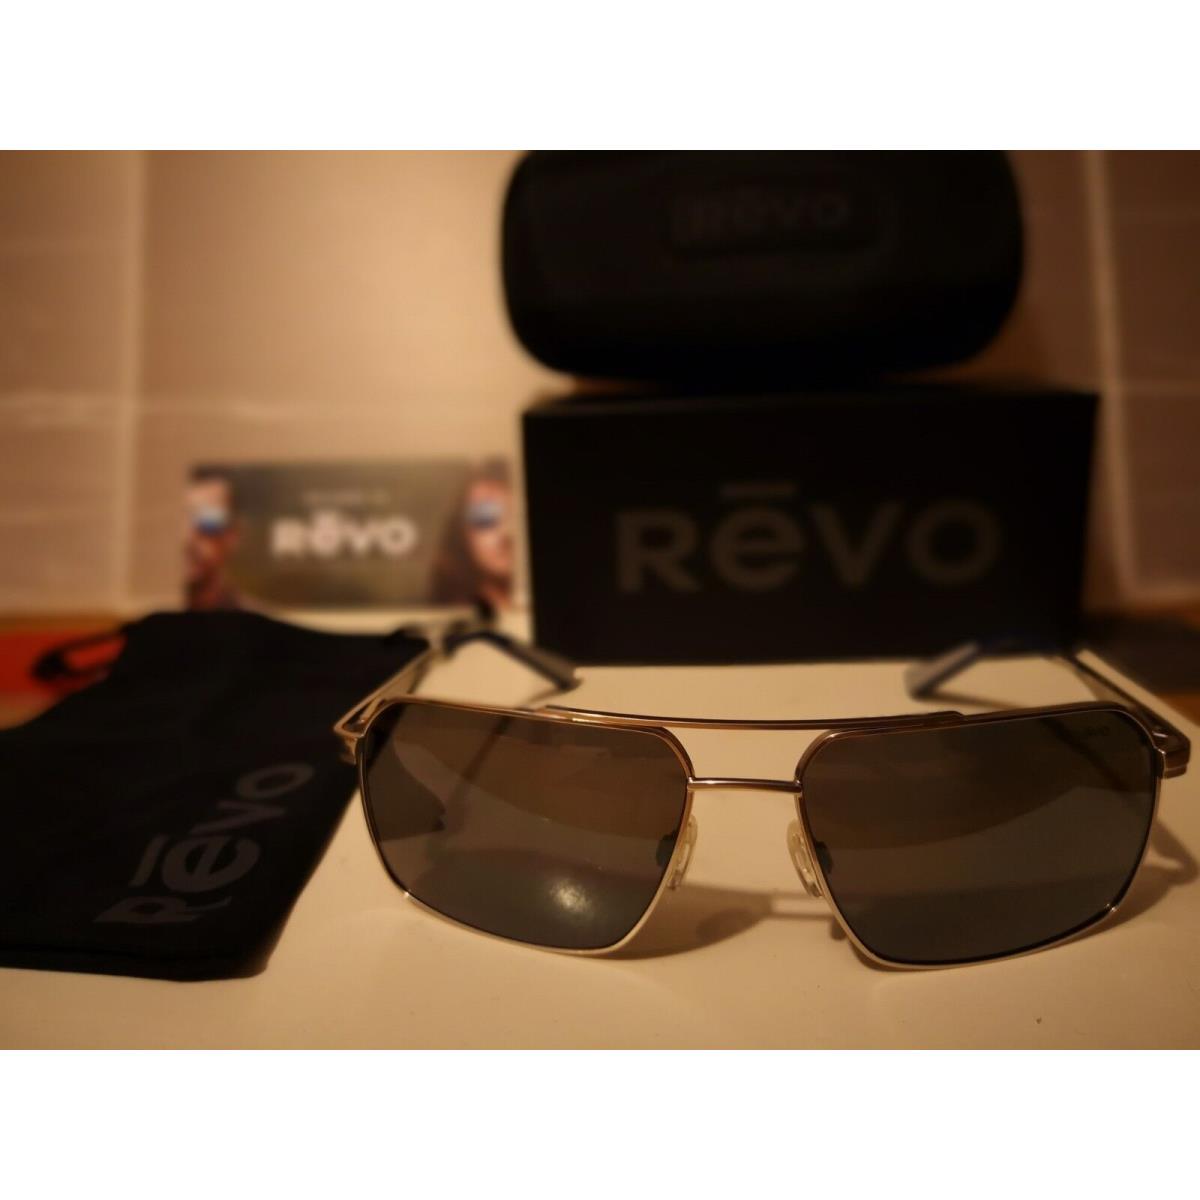 Revo sunglasses  - Chrome Frame, Graphite Polarized Lens